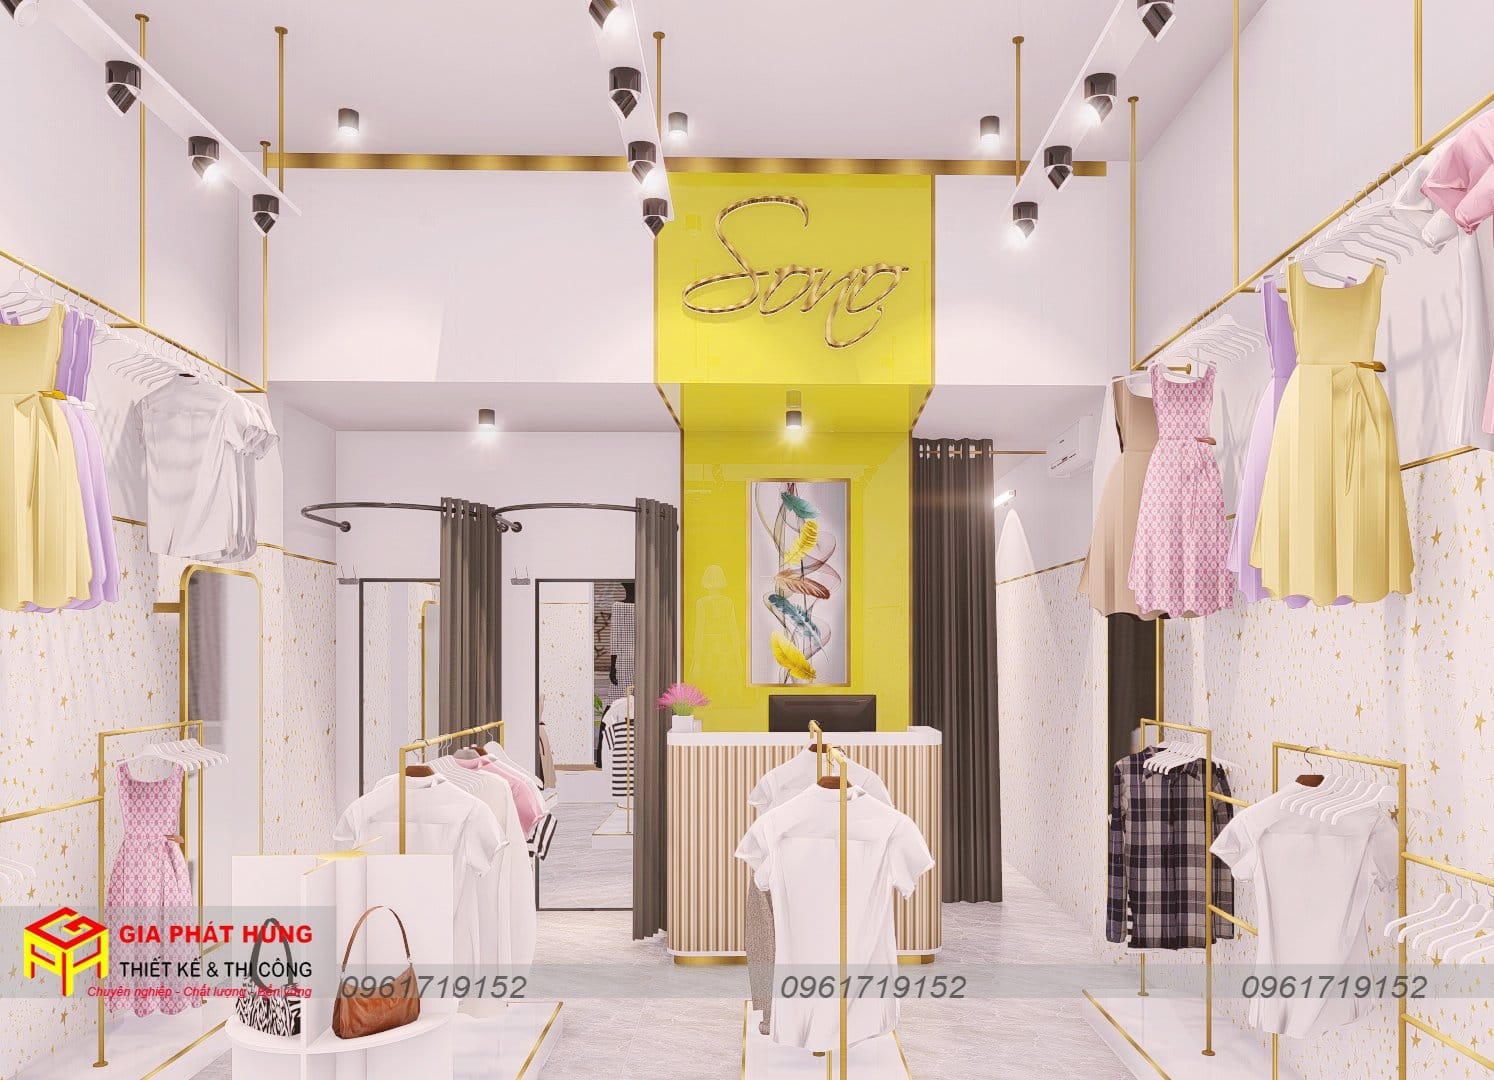 Thiết kế thi công shop thời trang Sono - Thiết kế shop